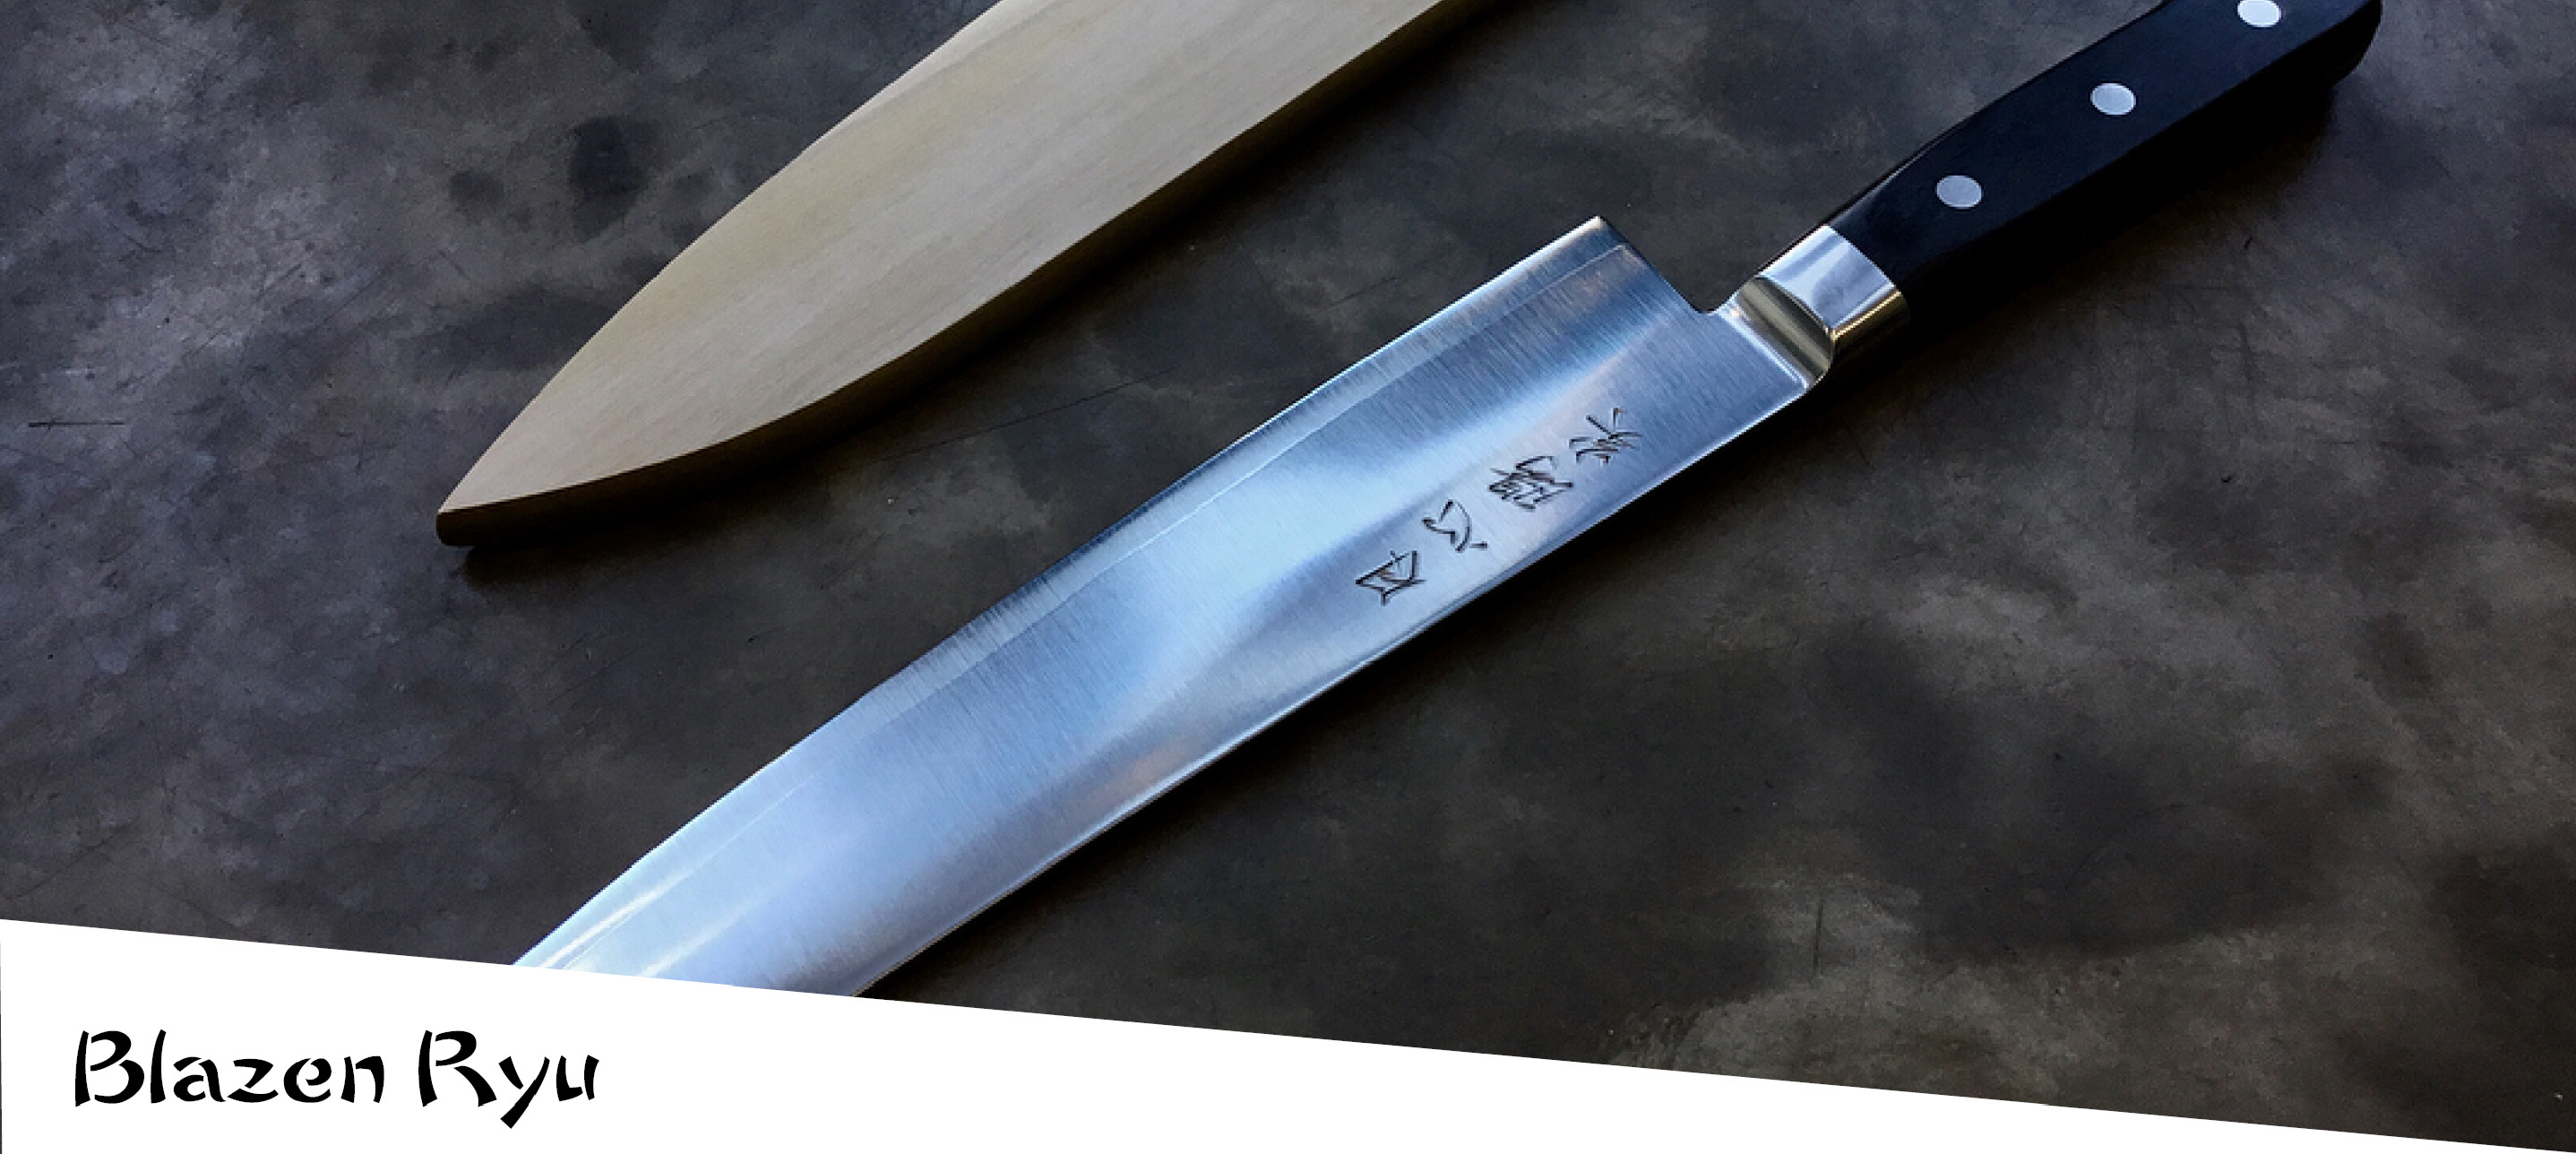 couteaux japonais ryusen blazen ryu